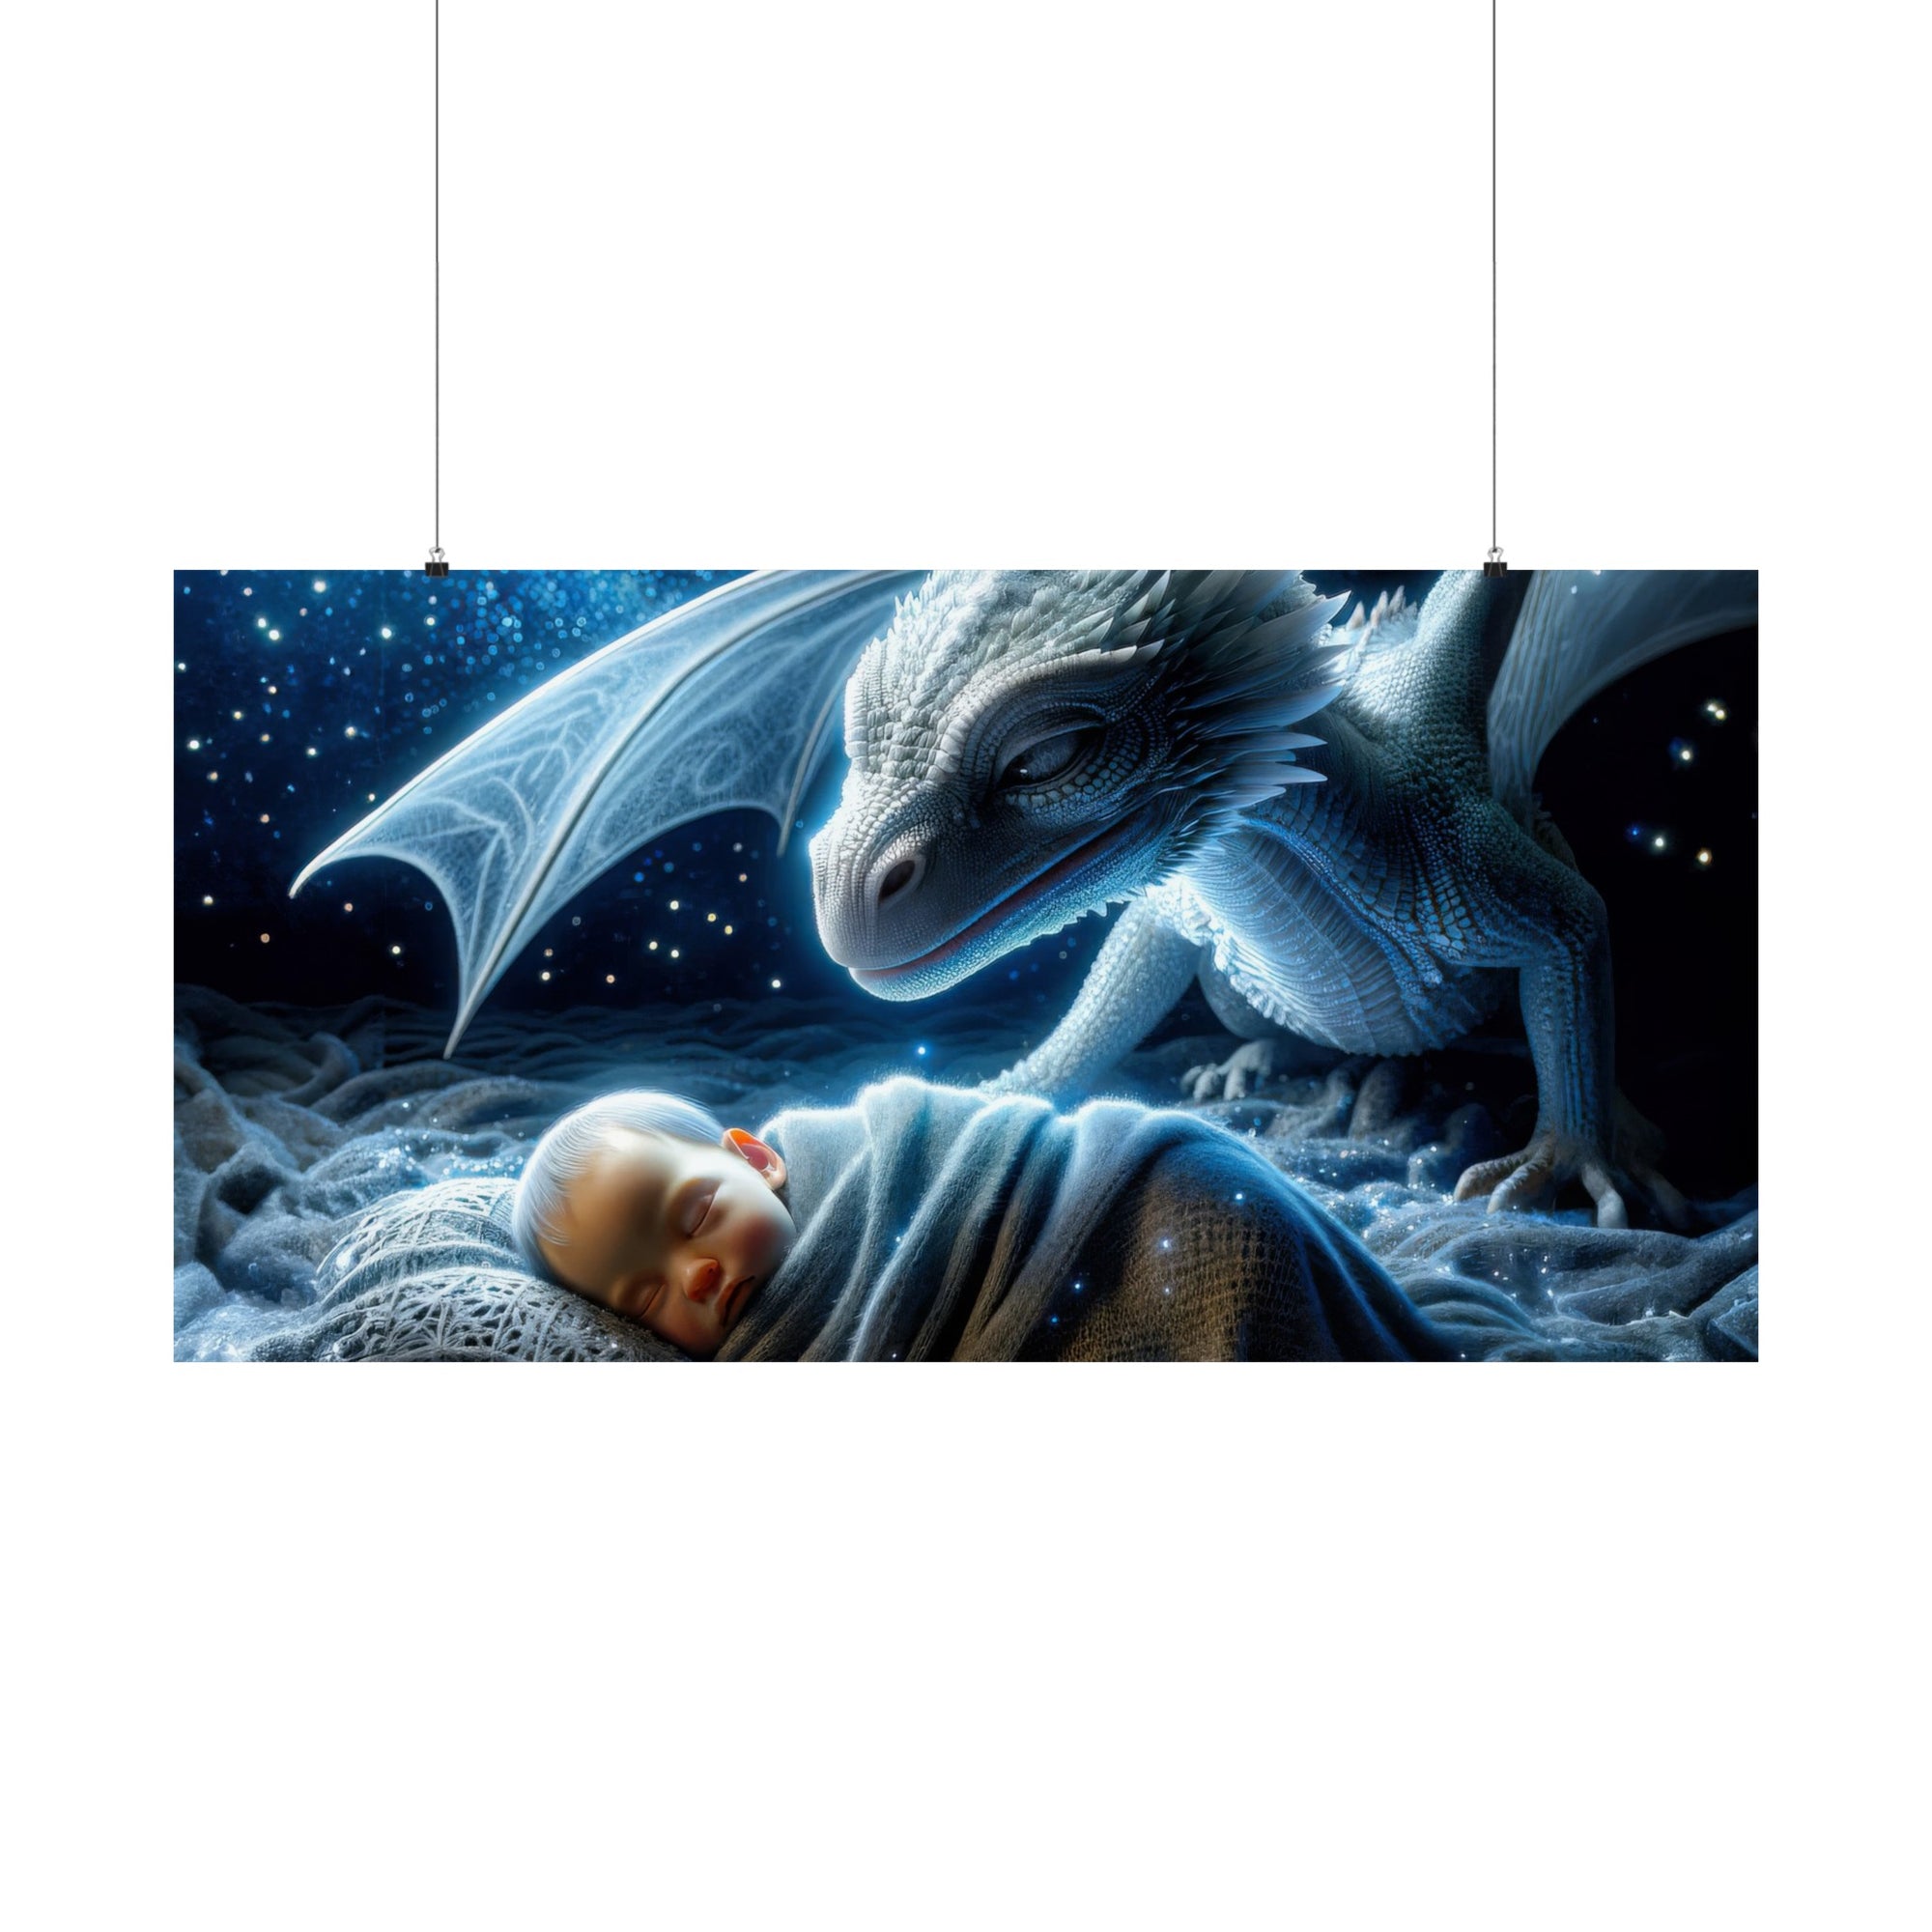 Stardust Lullabies Poster